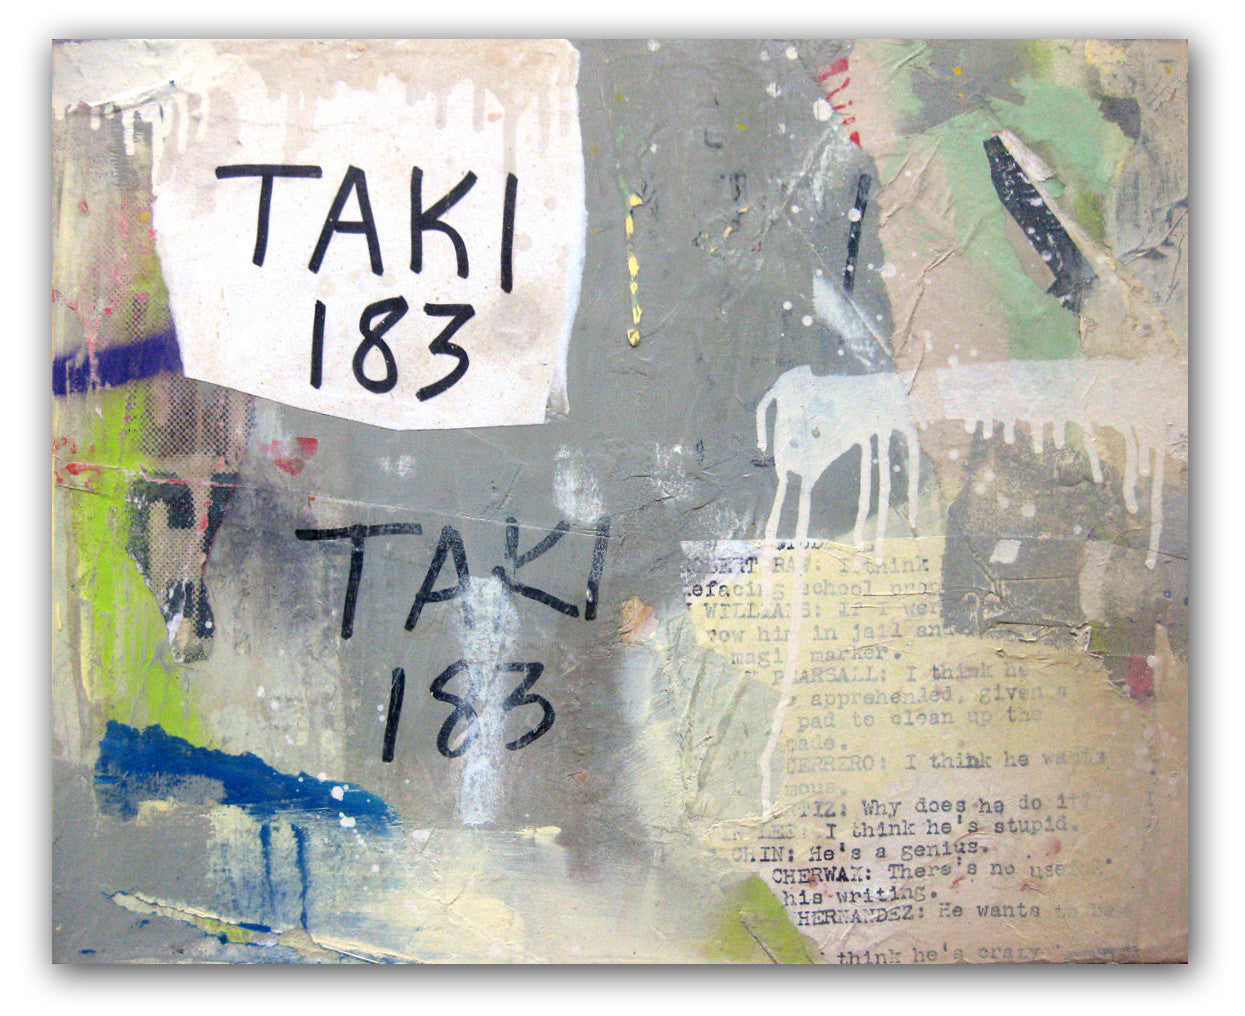 TAKI-183  Wood #2